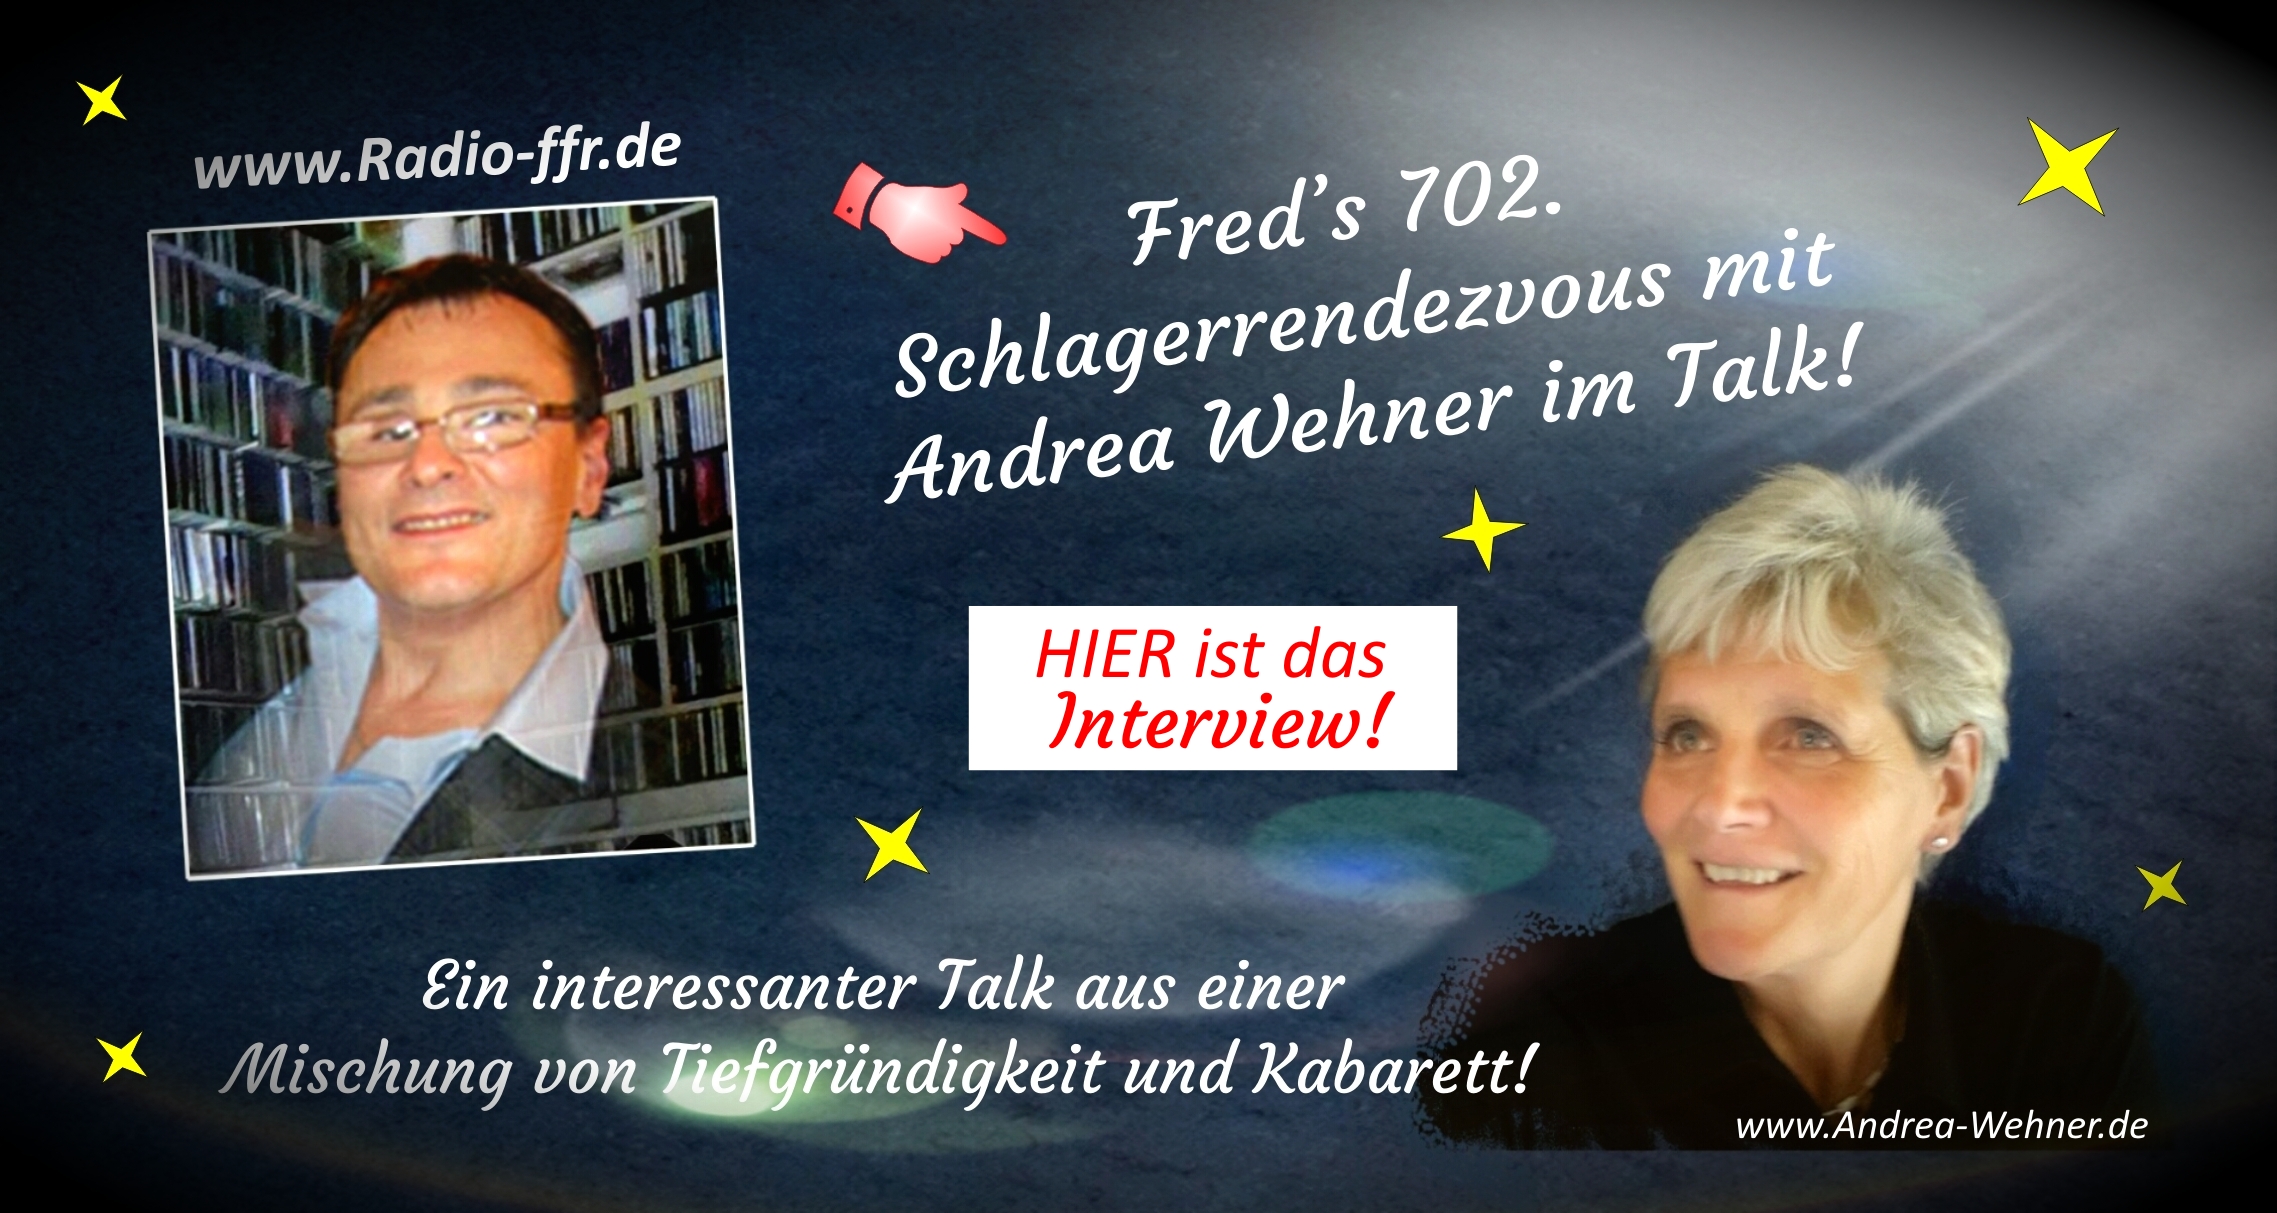 Interview Schlagerrendezvous